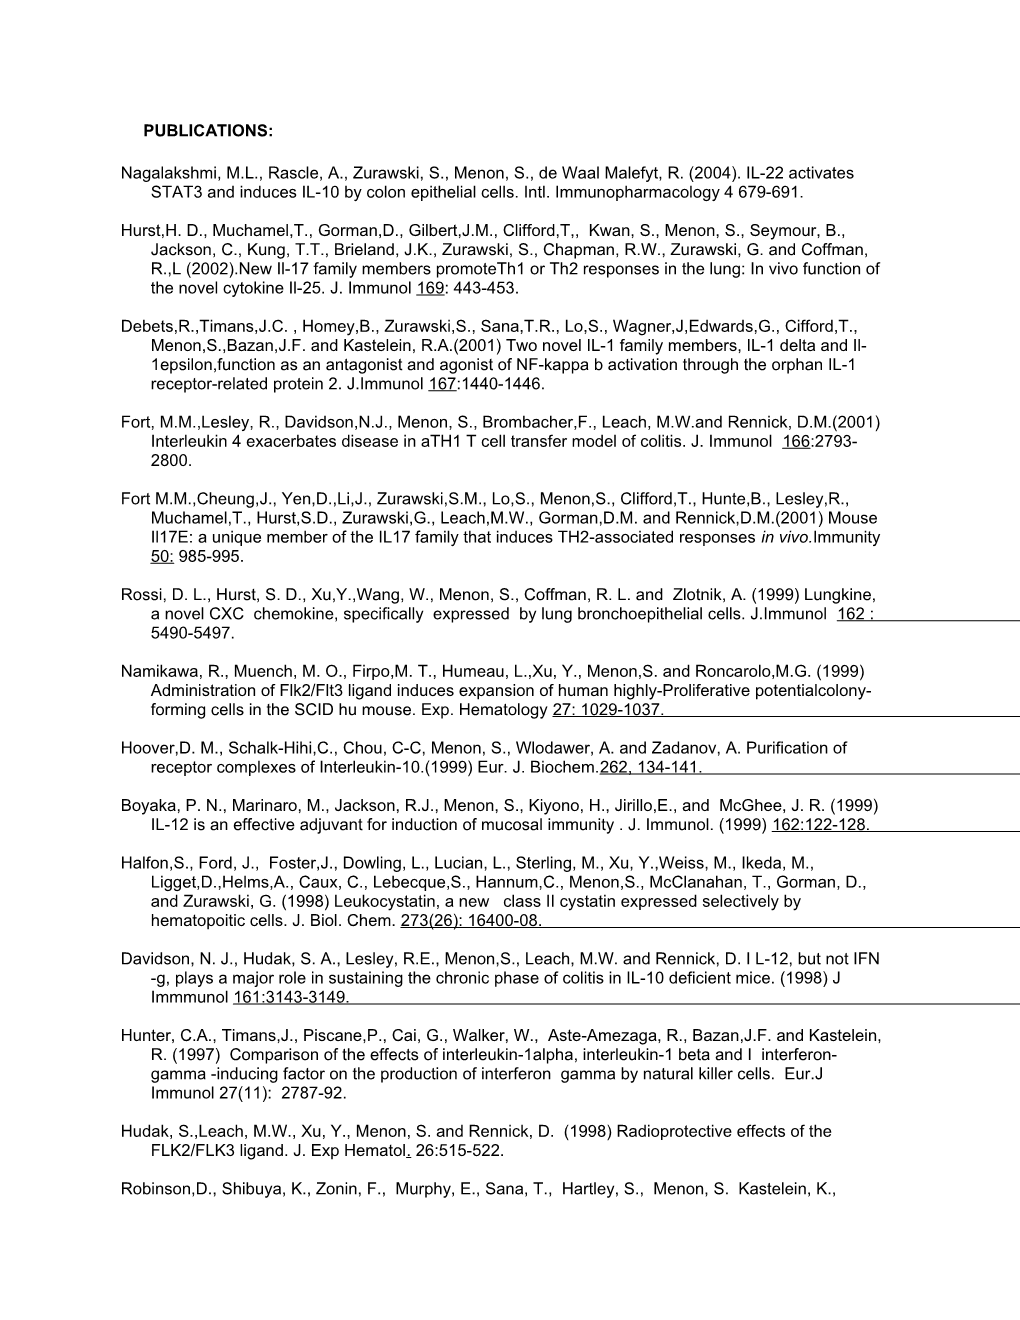 Nagalakshmi, M.L., Rascle, A., Zurawski, S., Menon, S., De Waal Malefyt, R. (2004). IL-22